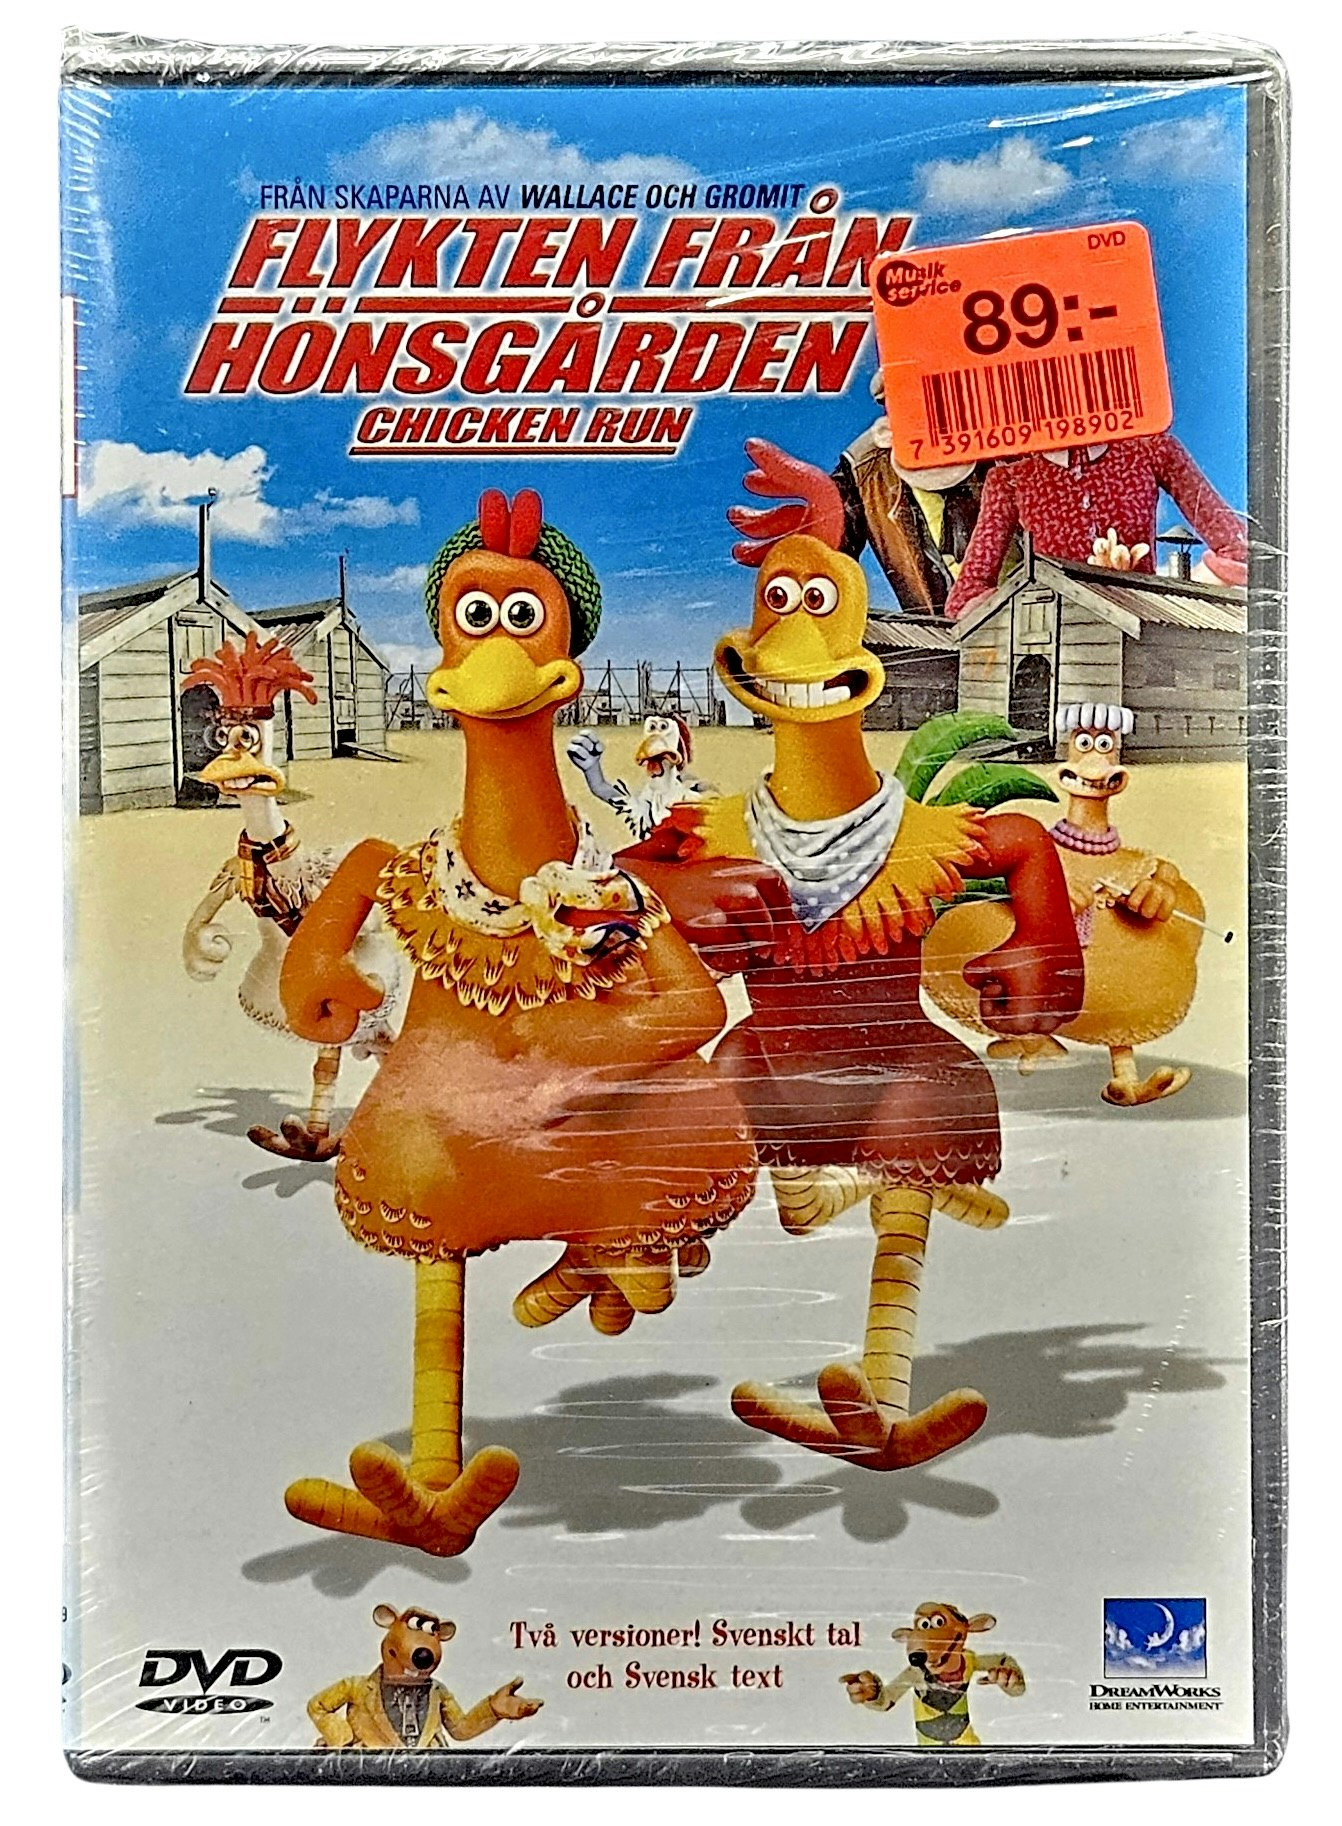 Flykten Från Hönsgården, Chicken Run, DVD NY - Tigris Antiques & Art